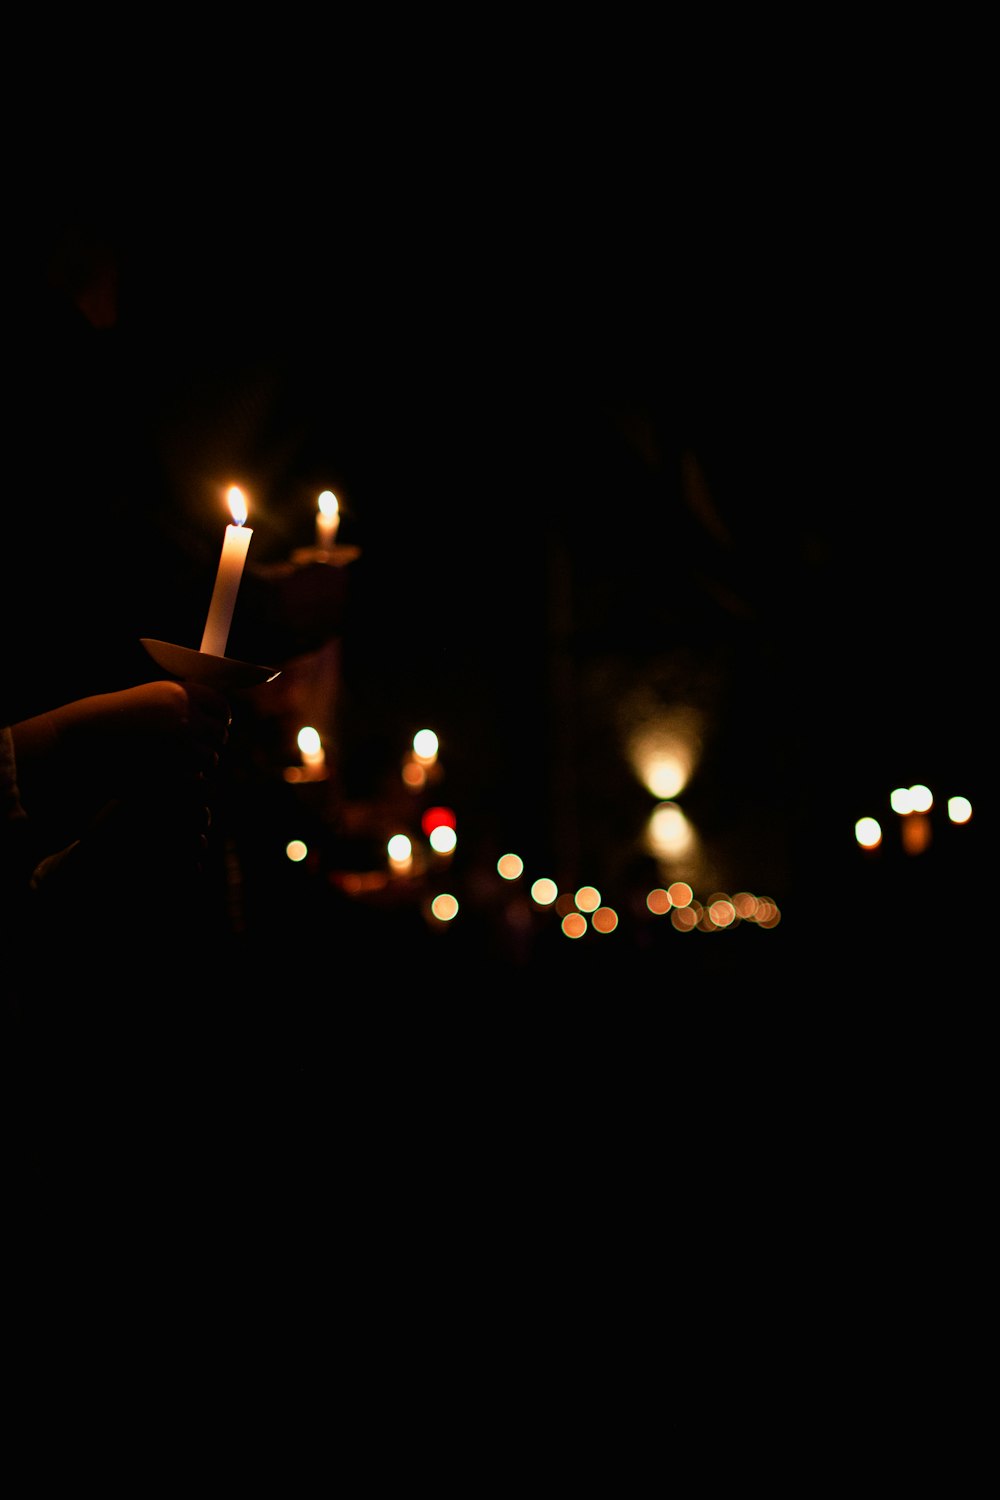 Person, die nachts eine brennende Kerze in der Hand hält